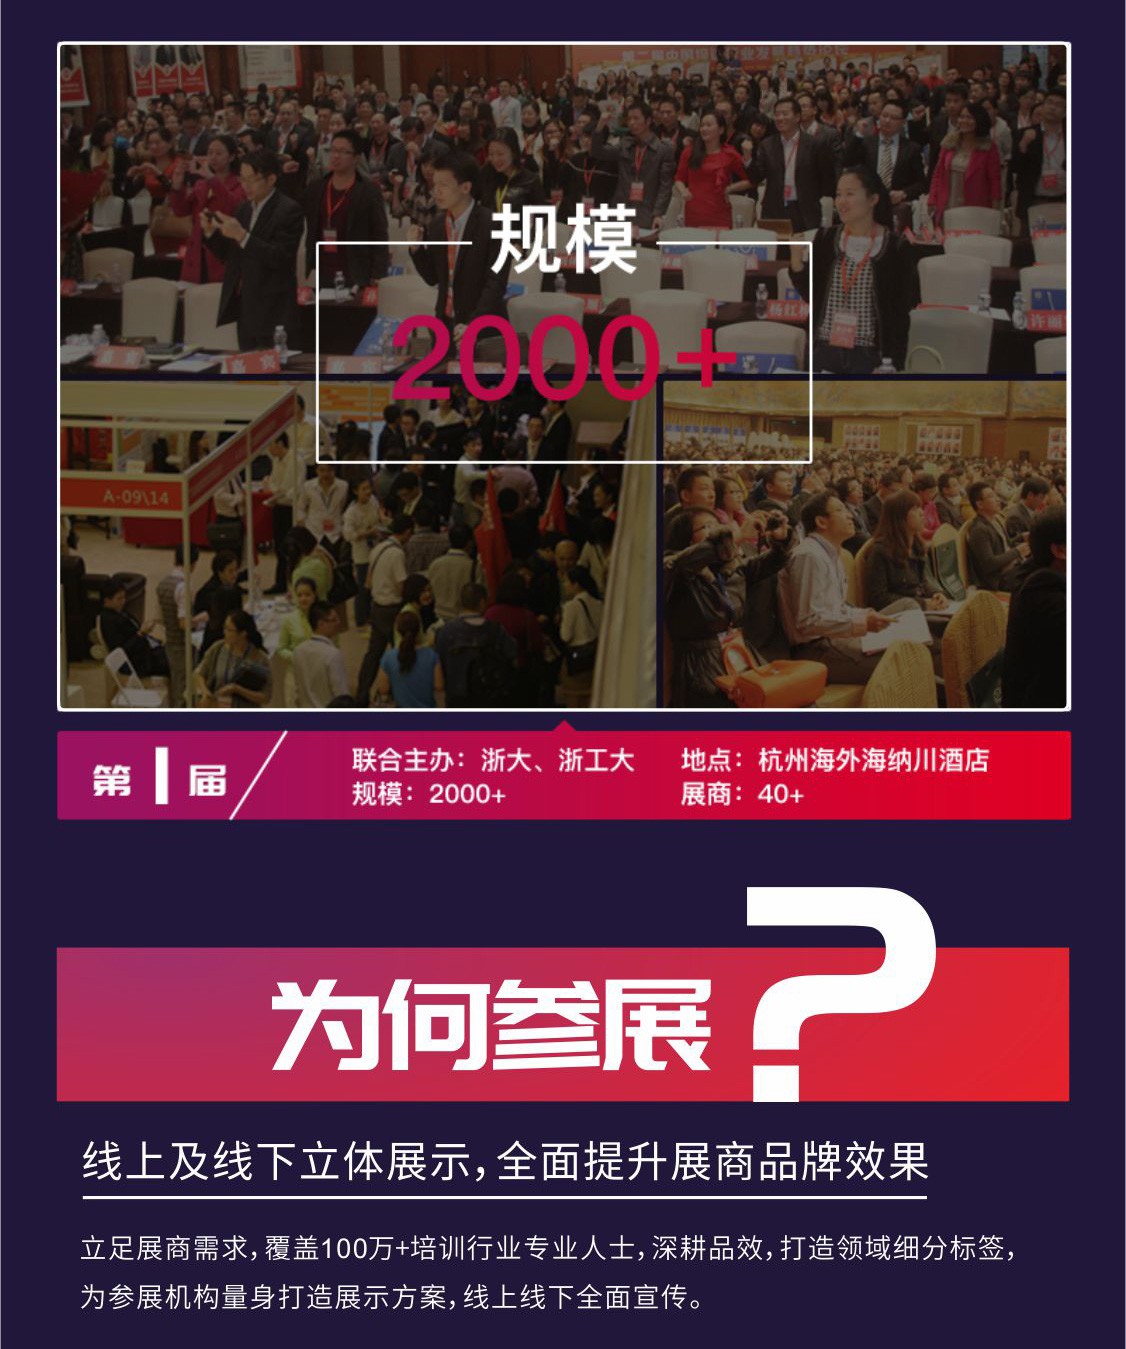 2019国际培训产品博览会(培博会)宣传H5长图(1)_16.jpg